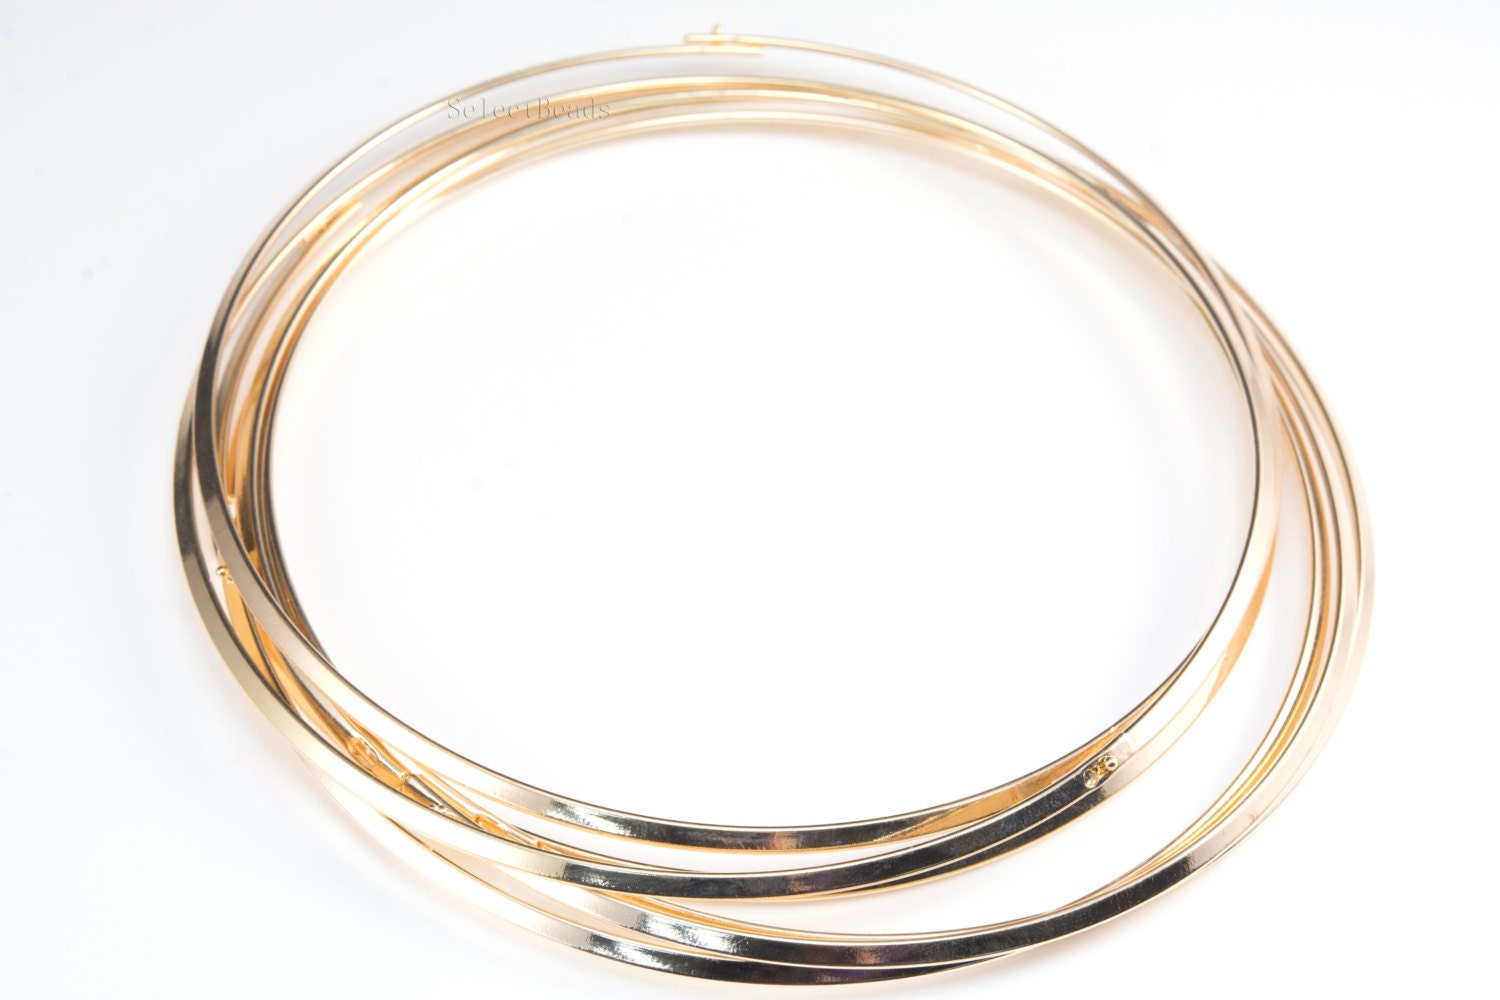 brass choker - gold plated brass collar - metal choker ... (1500 x 1000 Pixel)